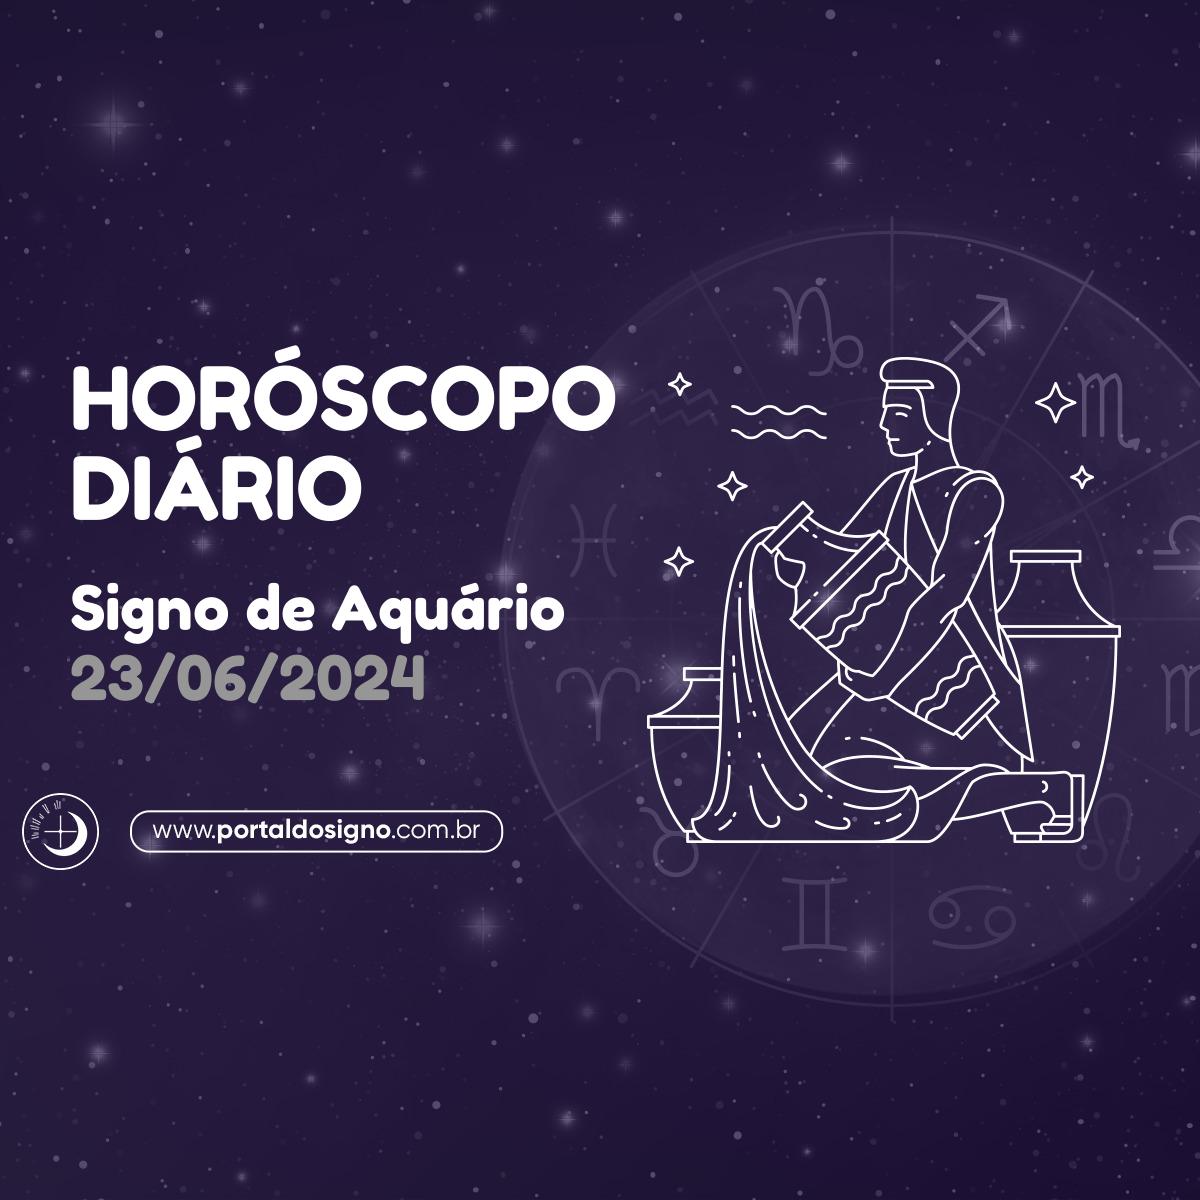 Horóscopo diário para Aquário em 23/06/2024